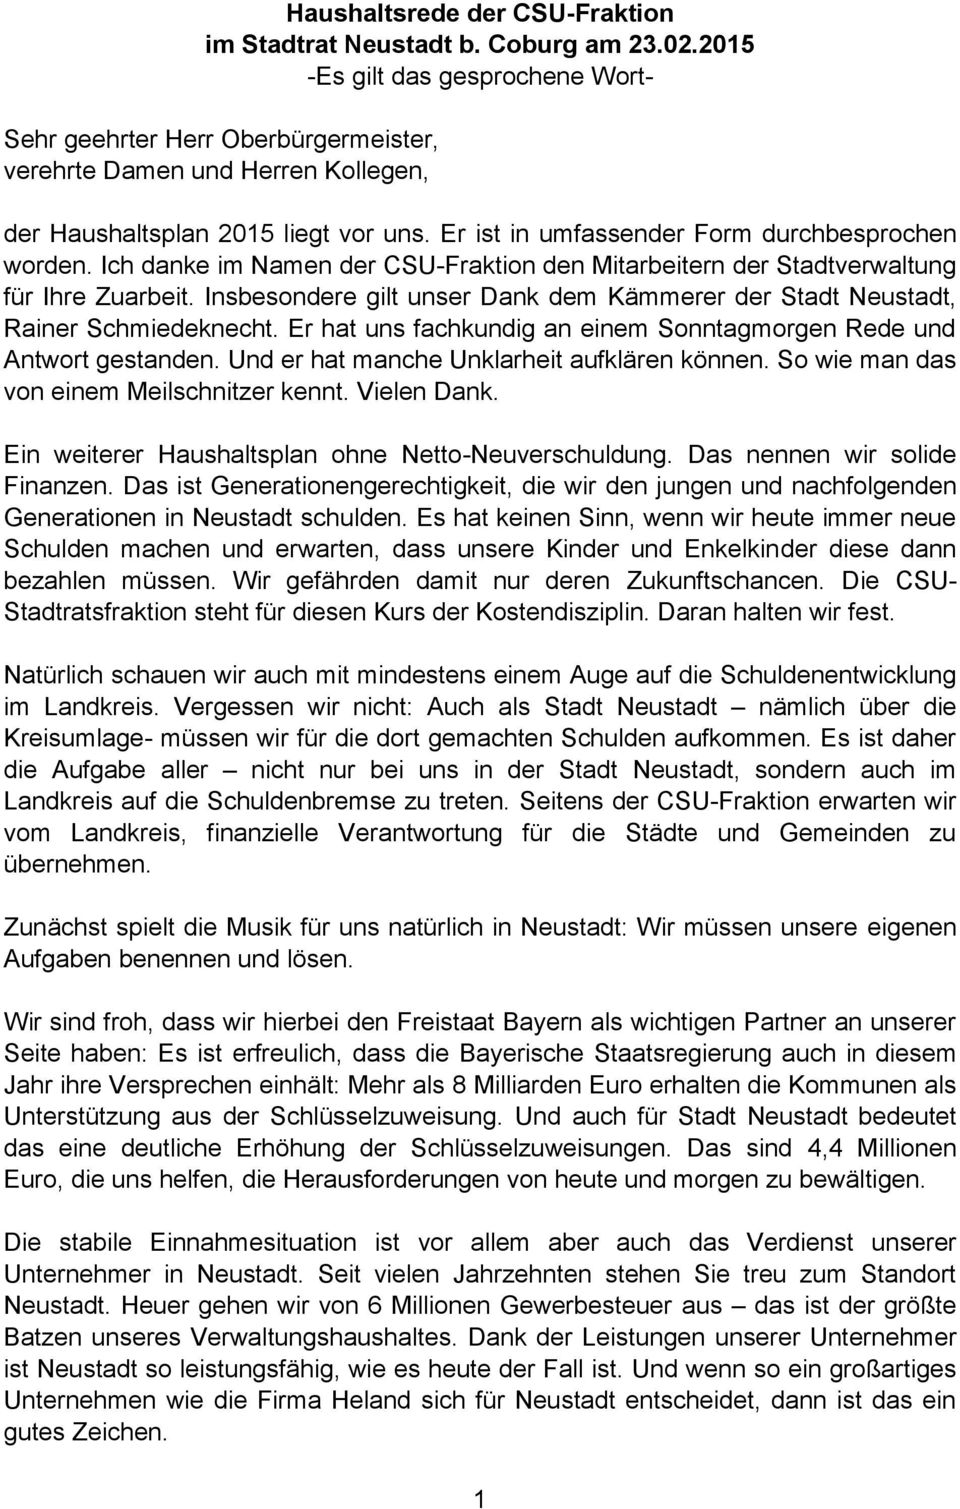 Ich danke im Namen der CSU-Fraktion den Mitarbeitern der Stadtverwaltung für Ihre Zuarbeit. Insbesondere gilt unser Dank dem Kämmerer der Stadt Neustadt, Rainer Schmiedeknecht.